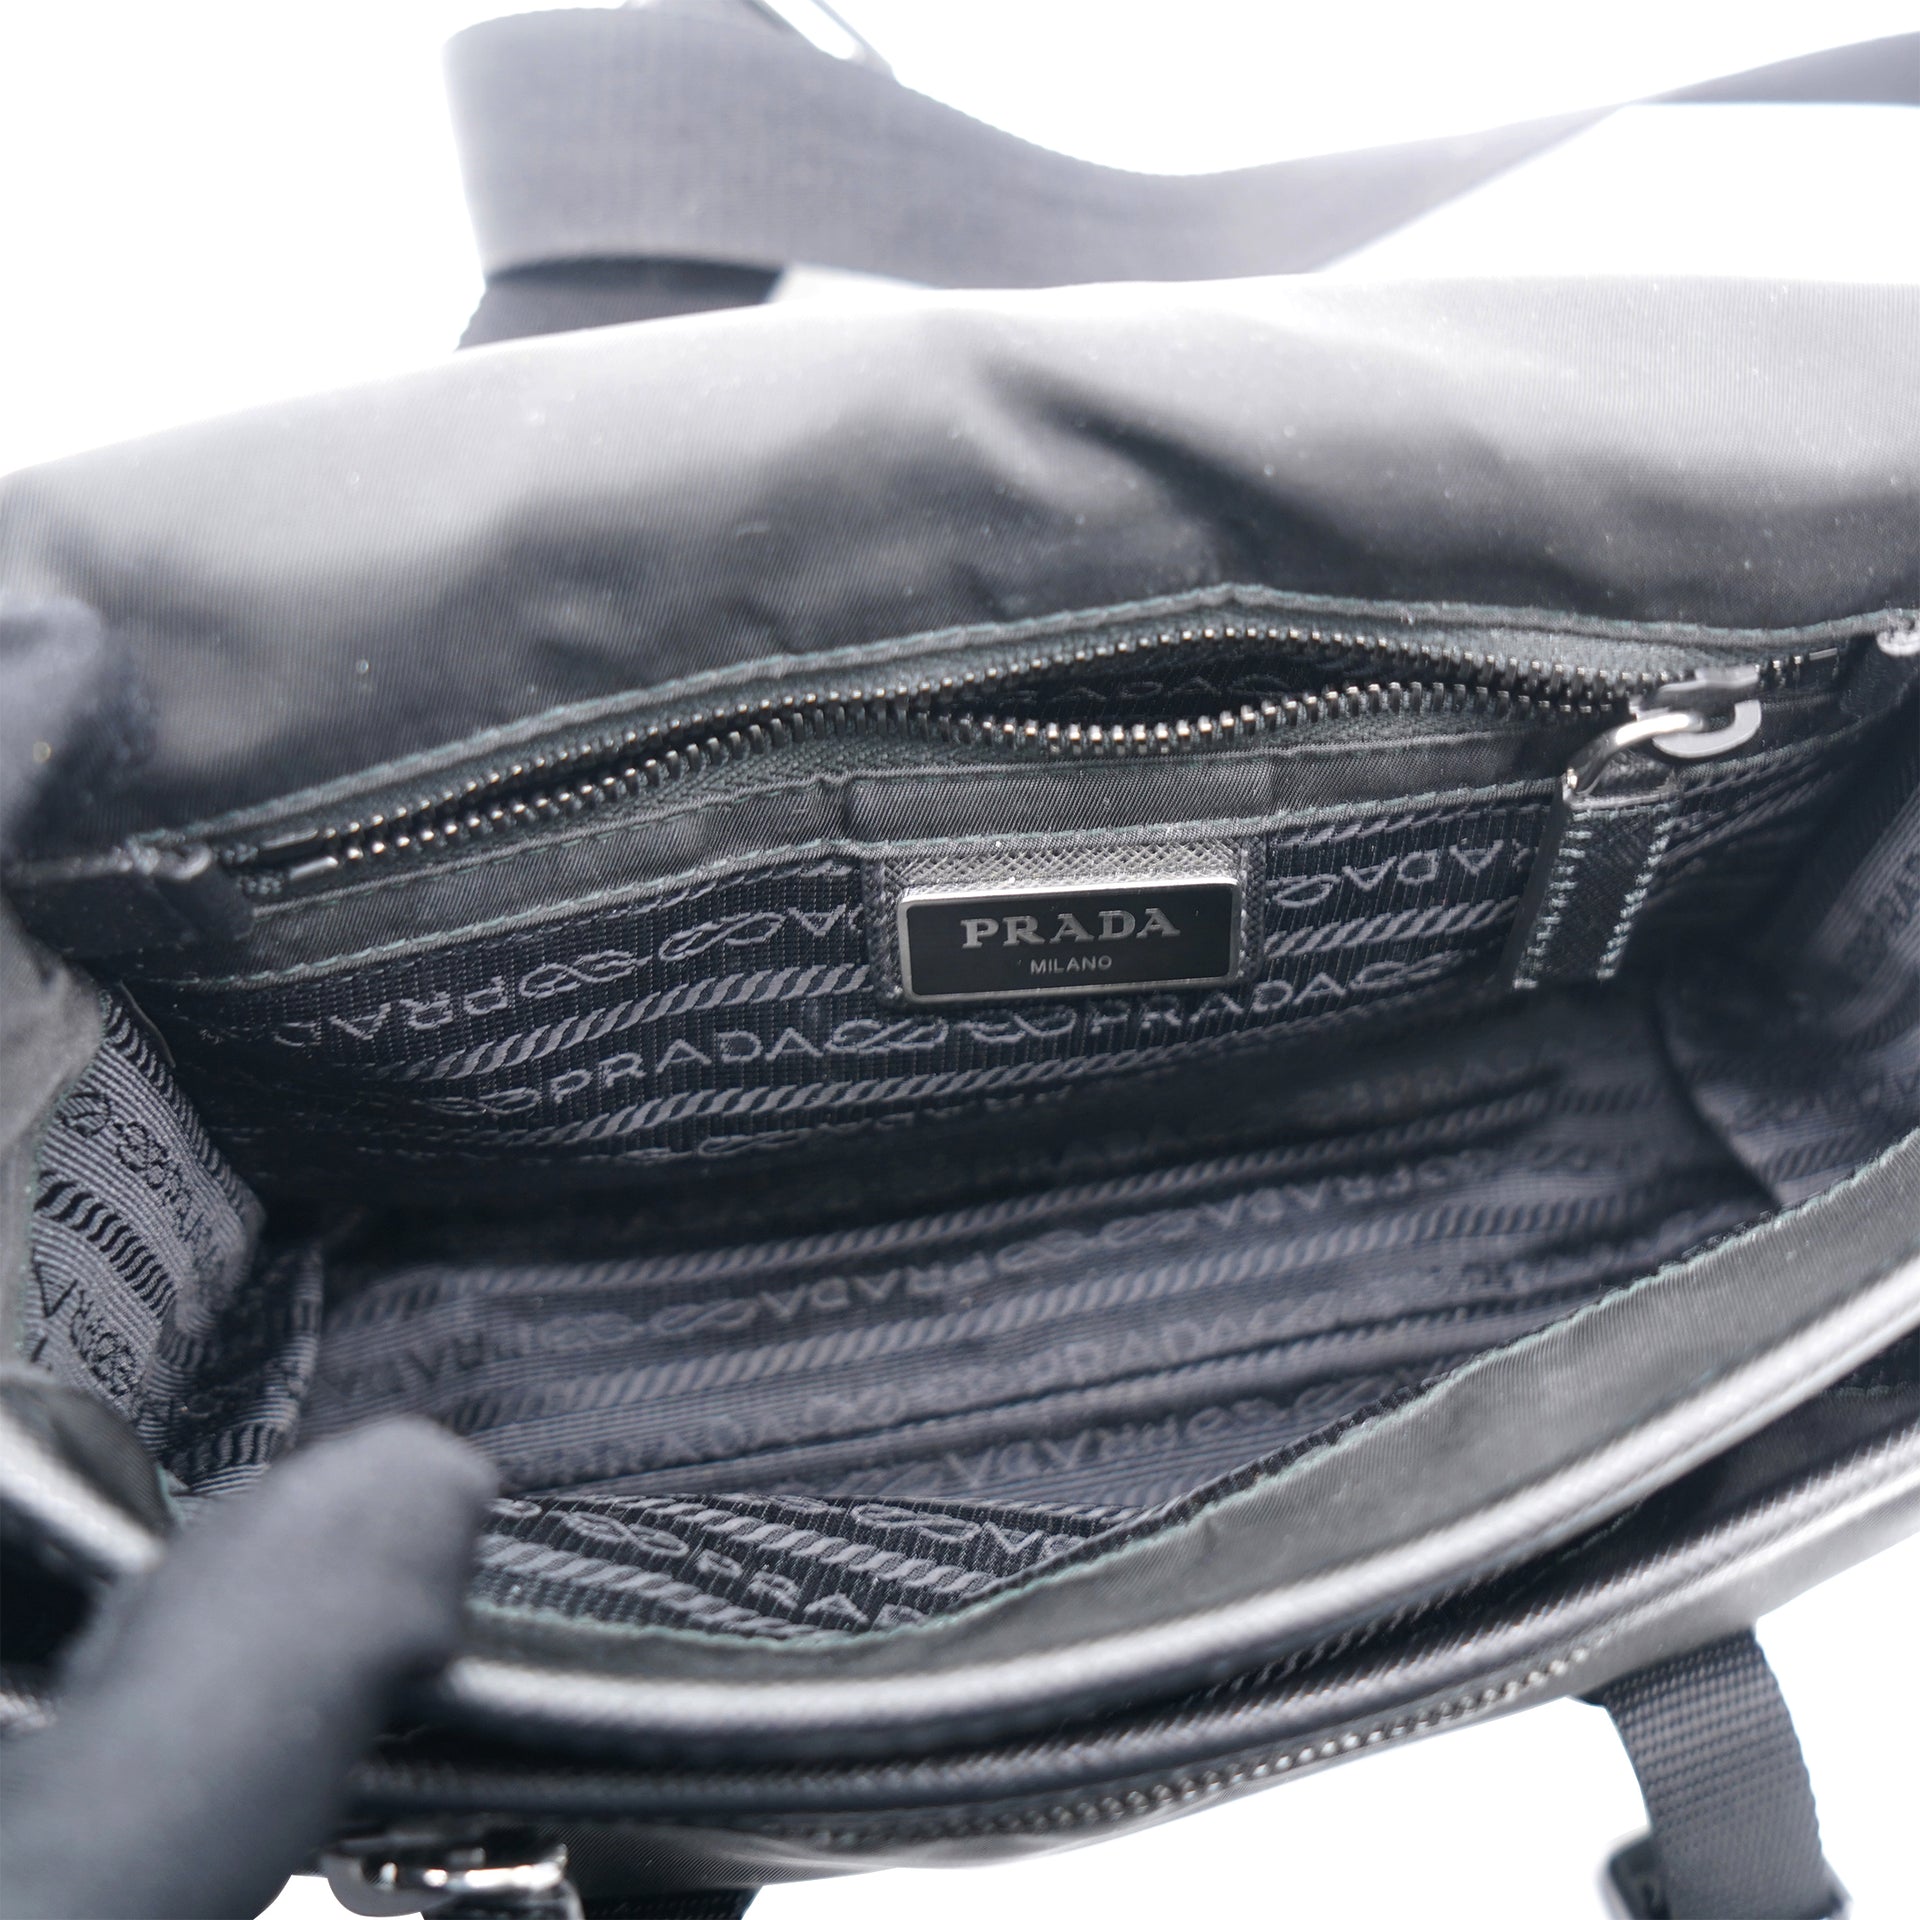 Bag > Prada Re-Nylon and Saffiano Leather Shoulder Bag